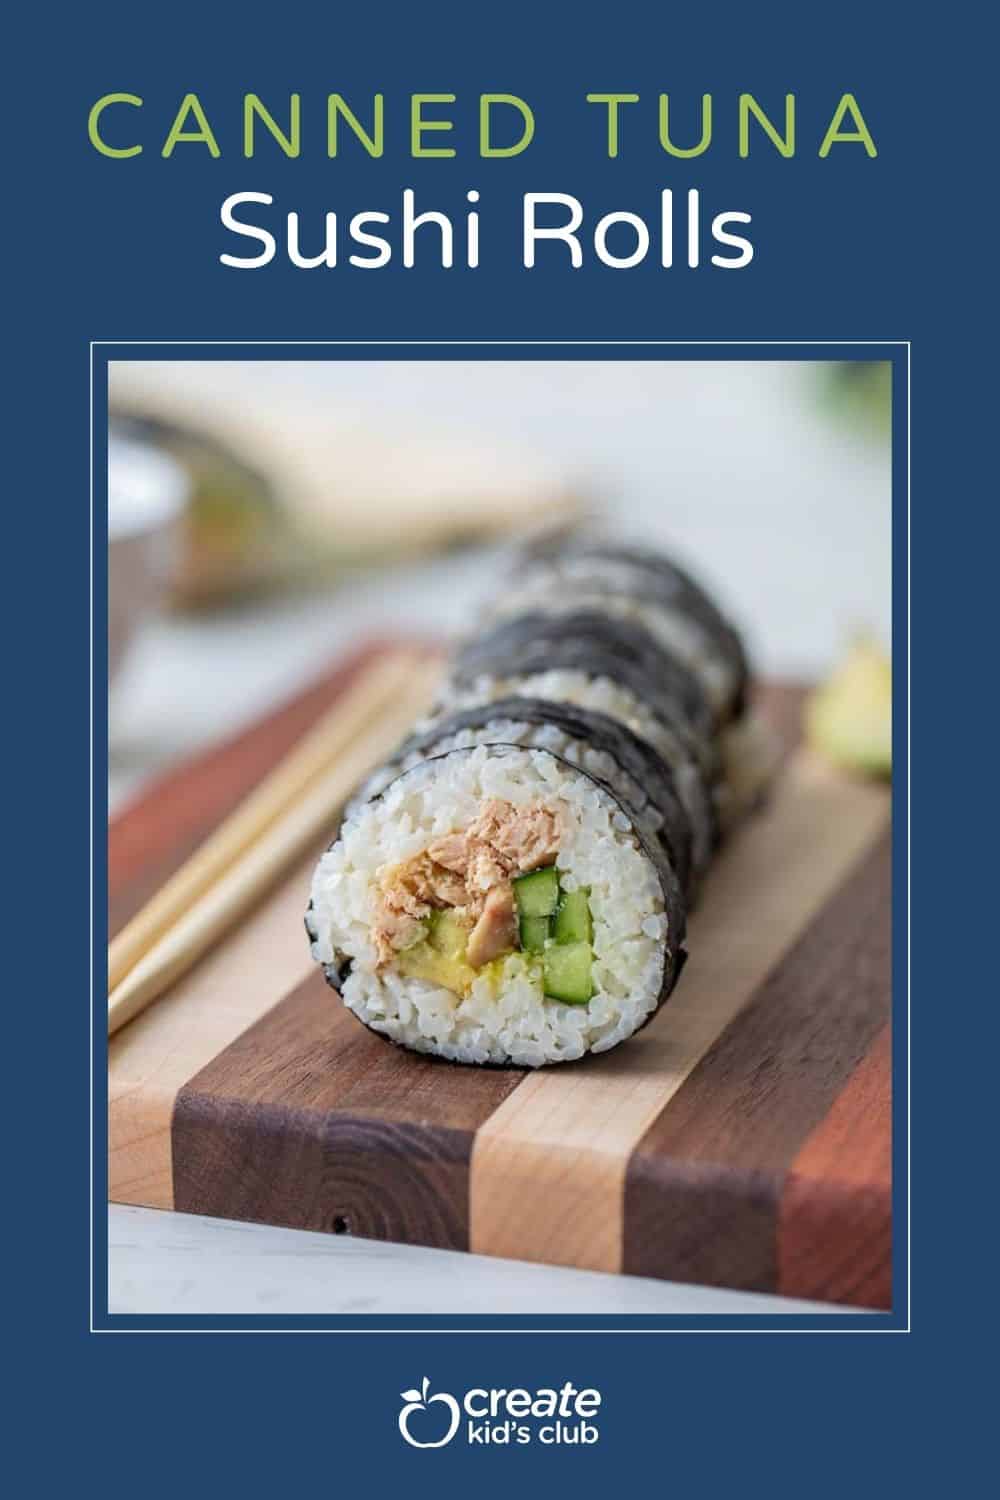 Pin of canned tuna sushi rolls.